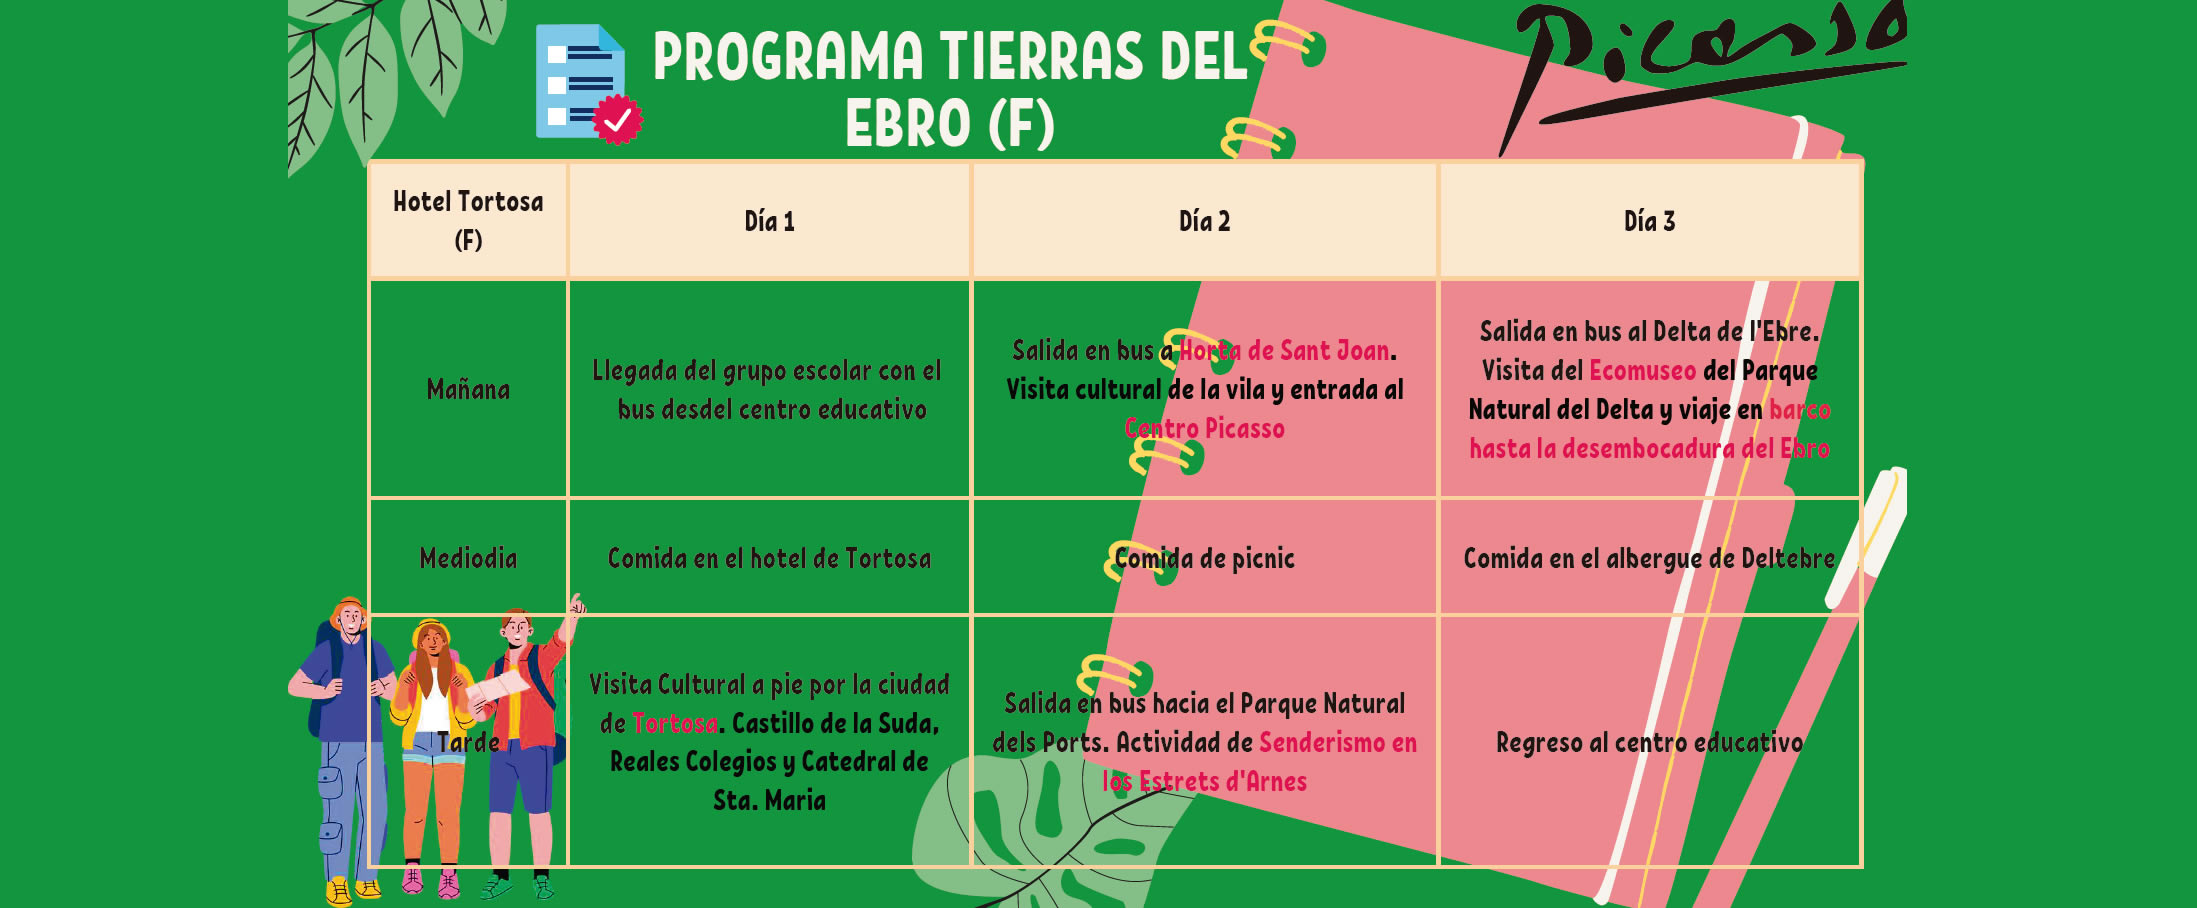 Programme scolaire Tierras del Ebro (F)